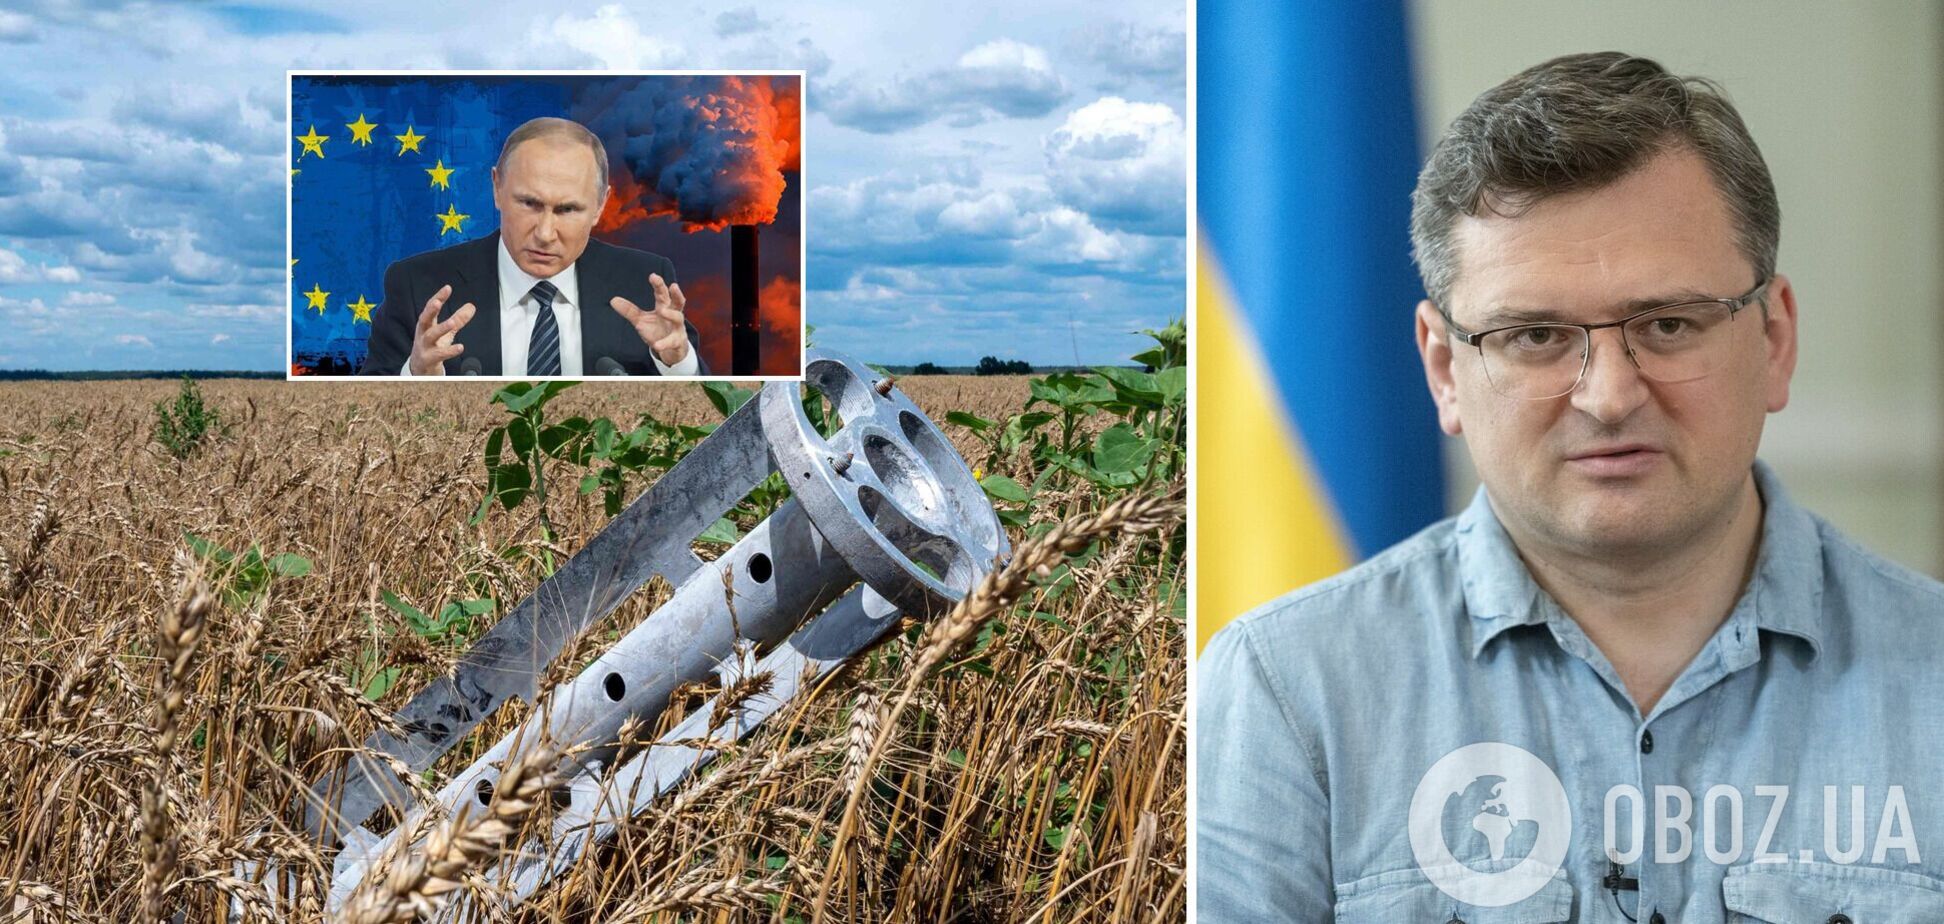 'Ми в одному човні': Кулеба заявив, що Путін атакував Україну ракетами, а Європу – пропагандою